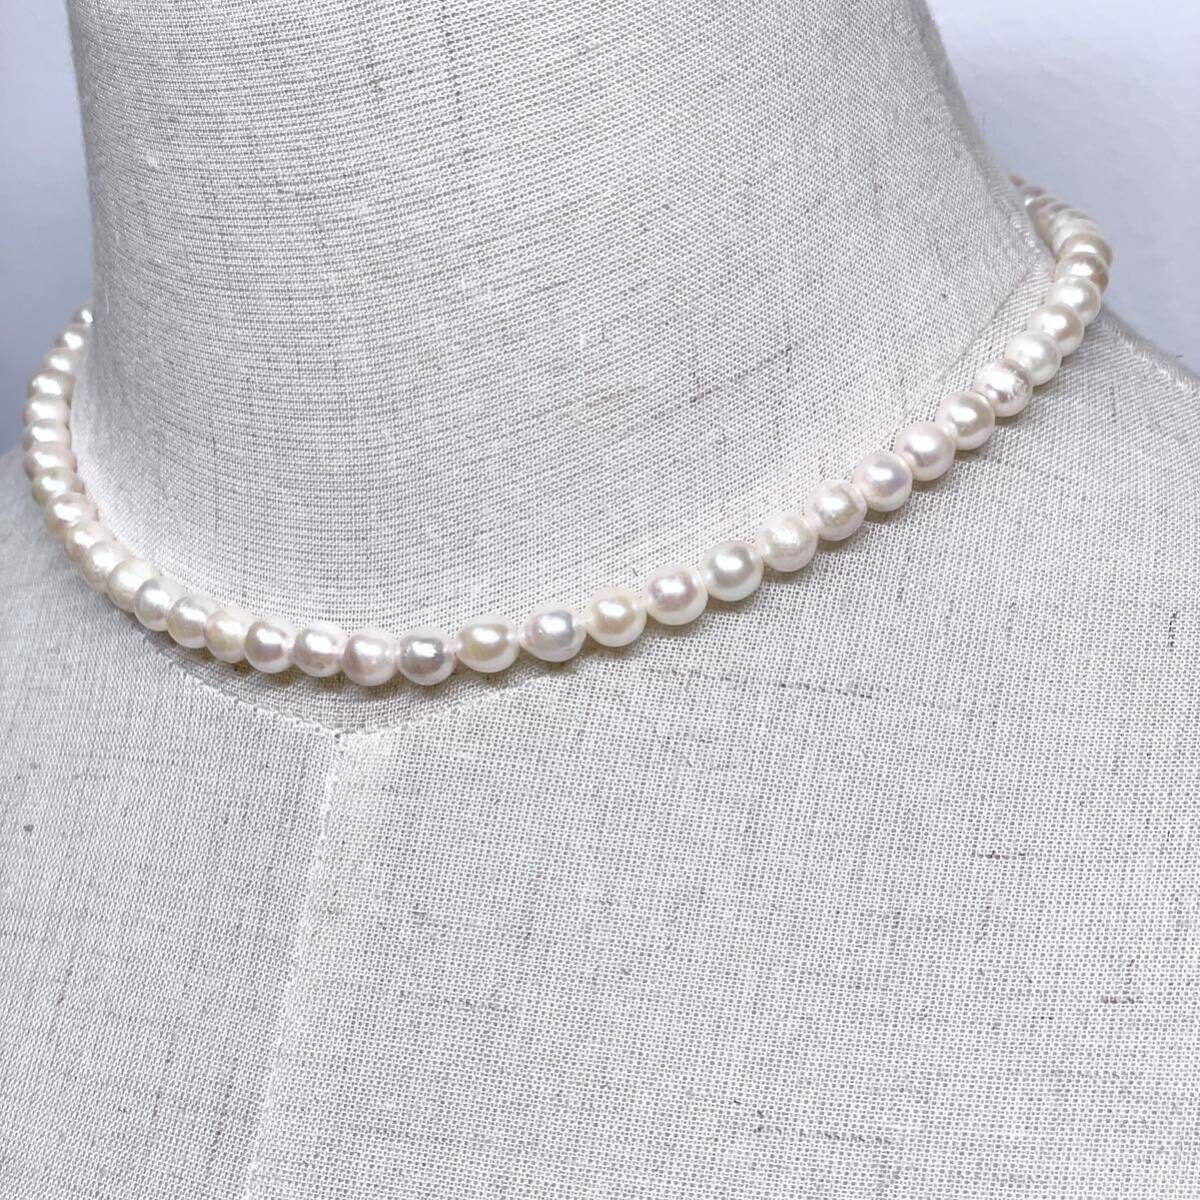 テリ良 本真珠 ネックレス 約40cm 6.0-6.3mm アコヤパール ラウンド pearl necklace jewelry silverの画像2